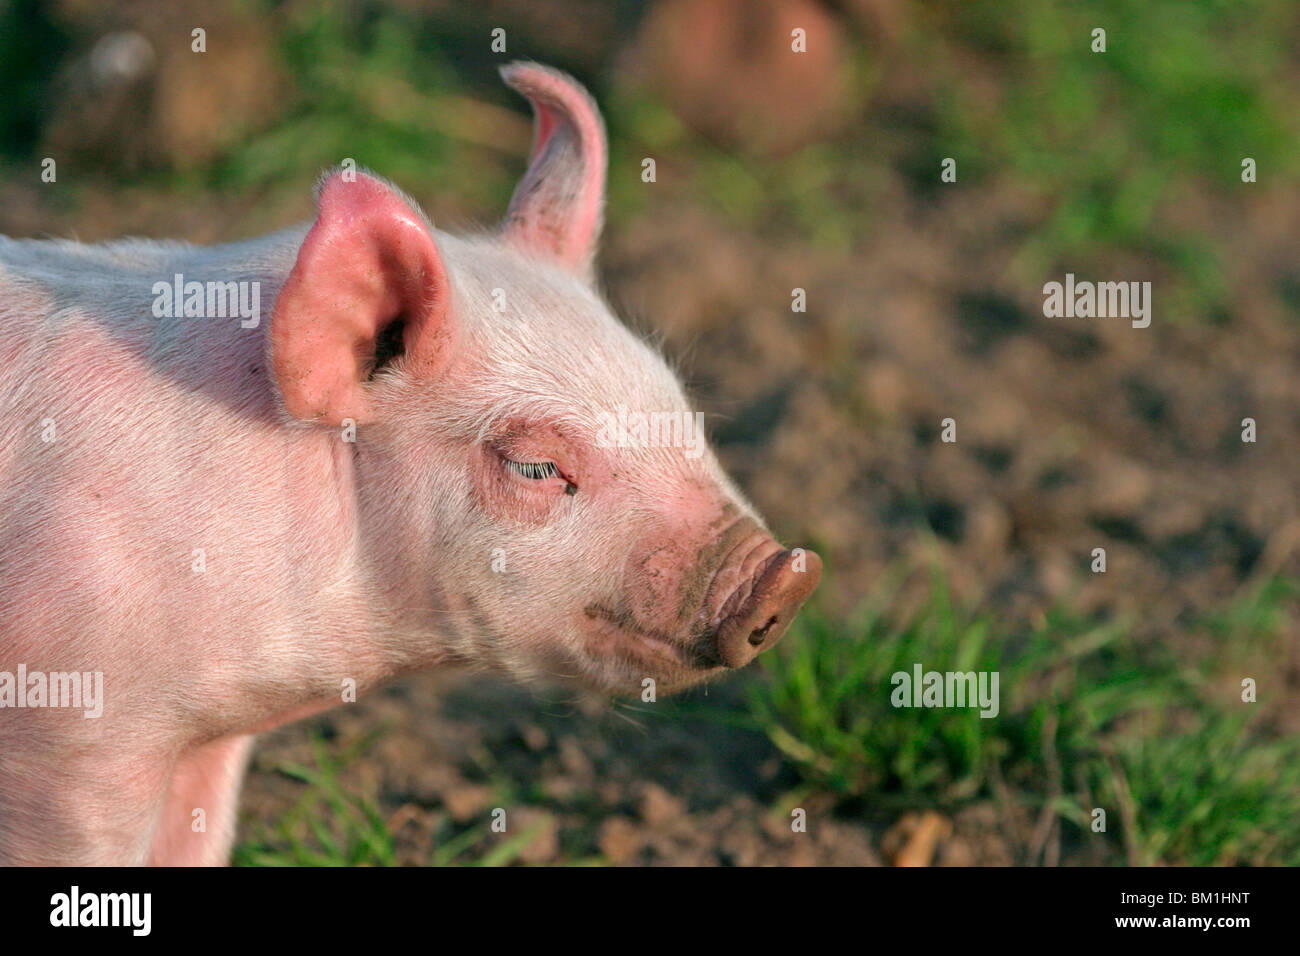 Schwein / pig Portrait Stock Photo